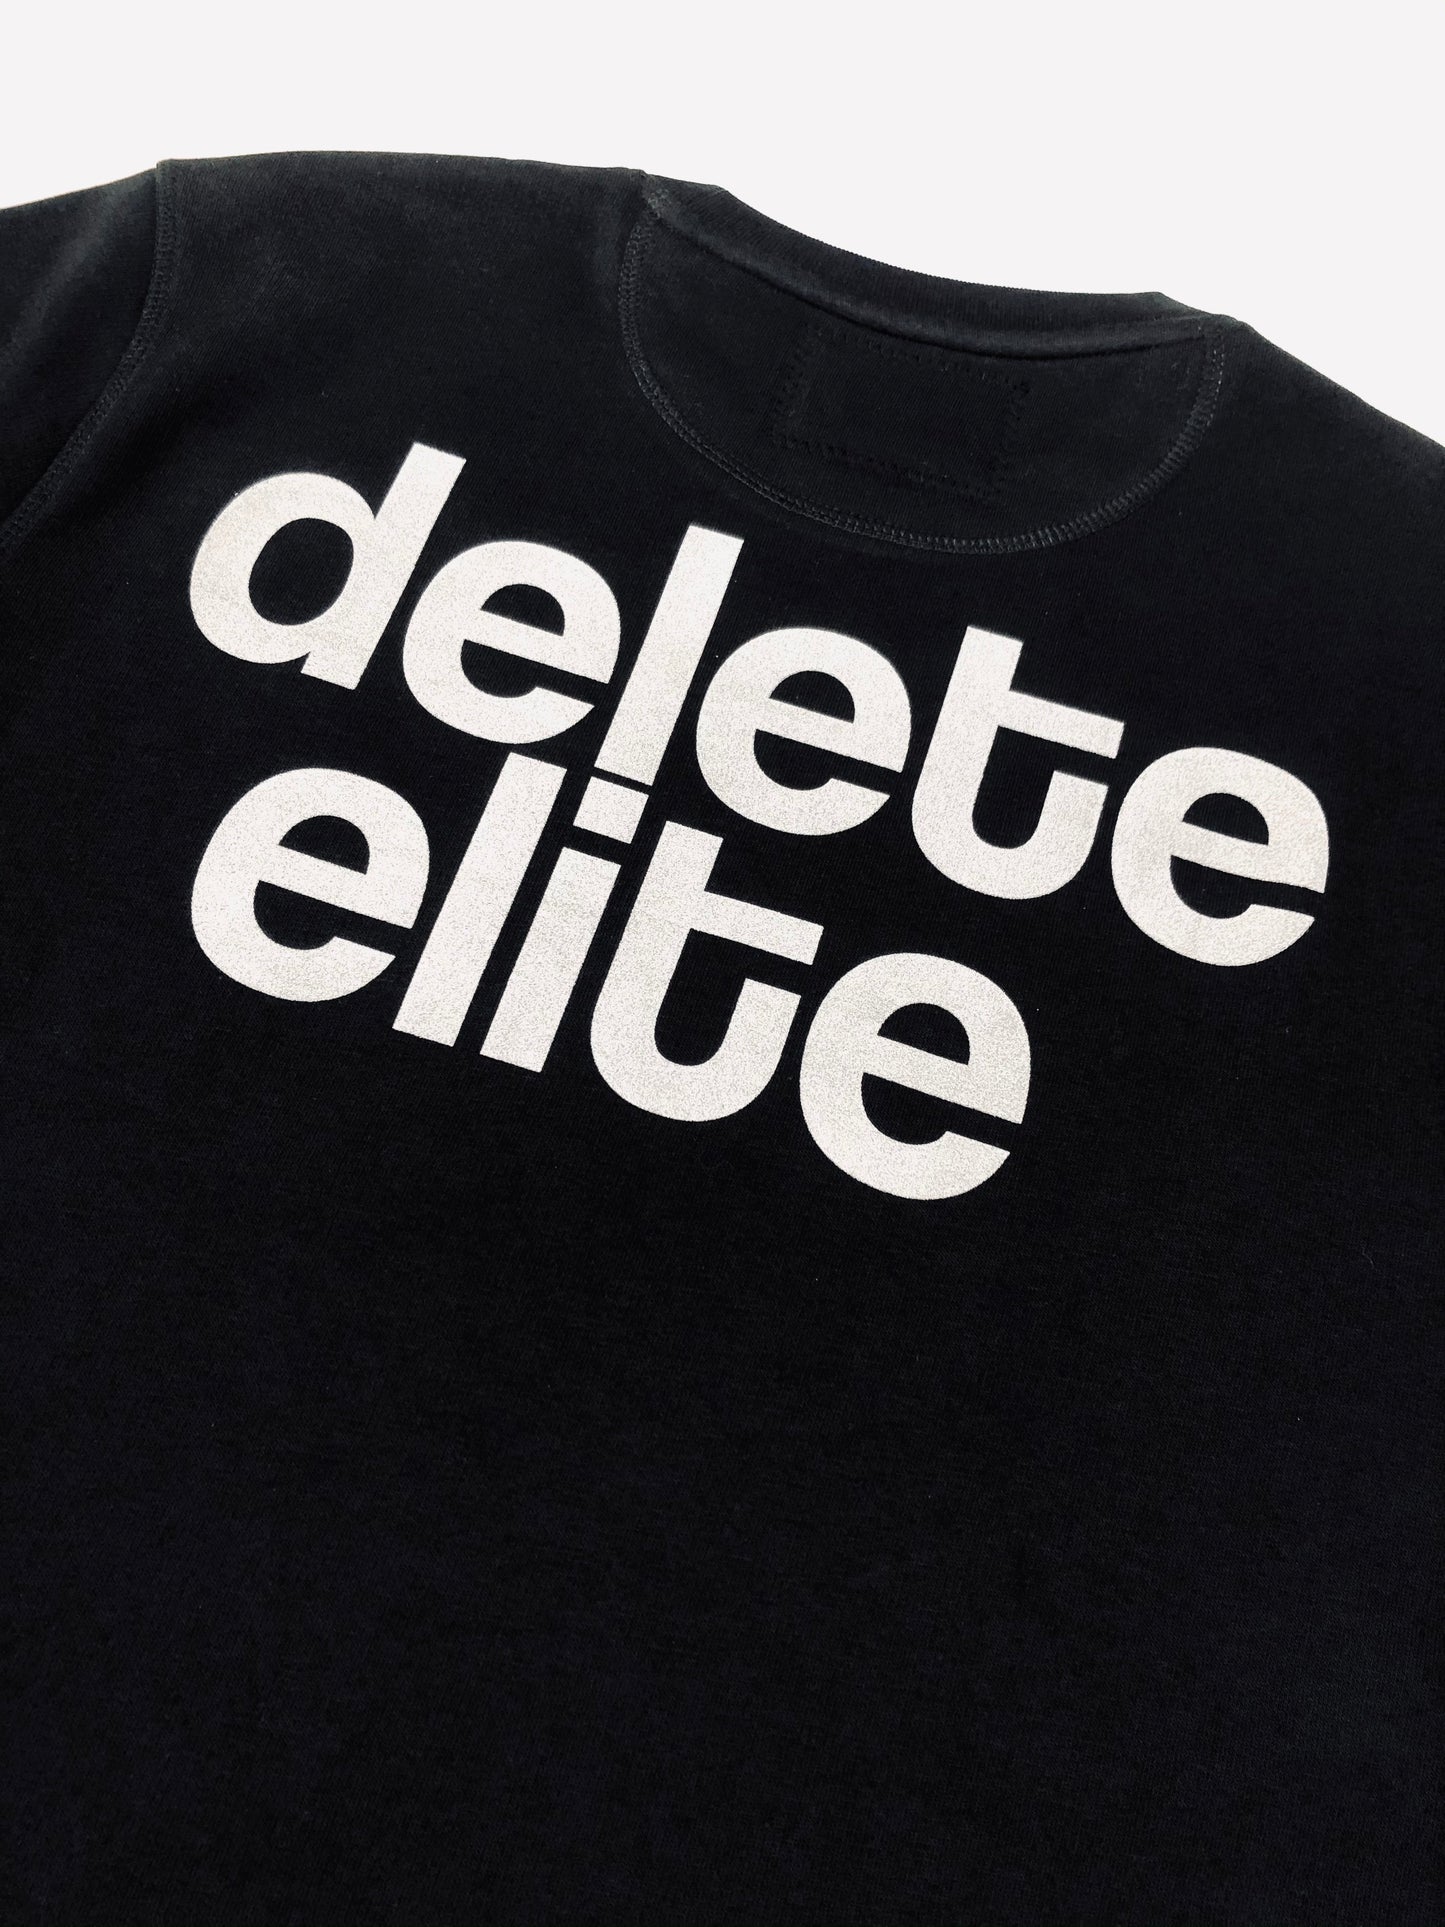 Delete Elite Crew Sweater